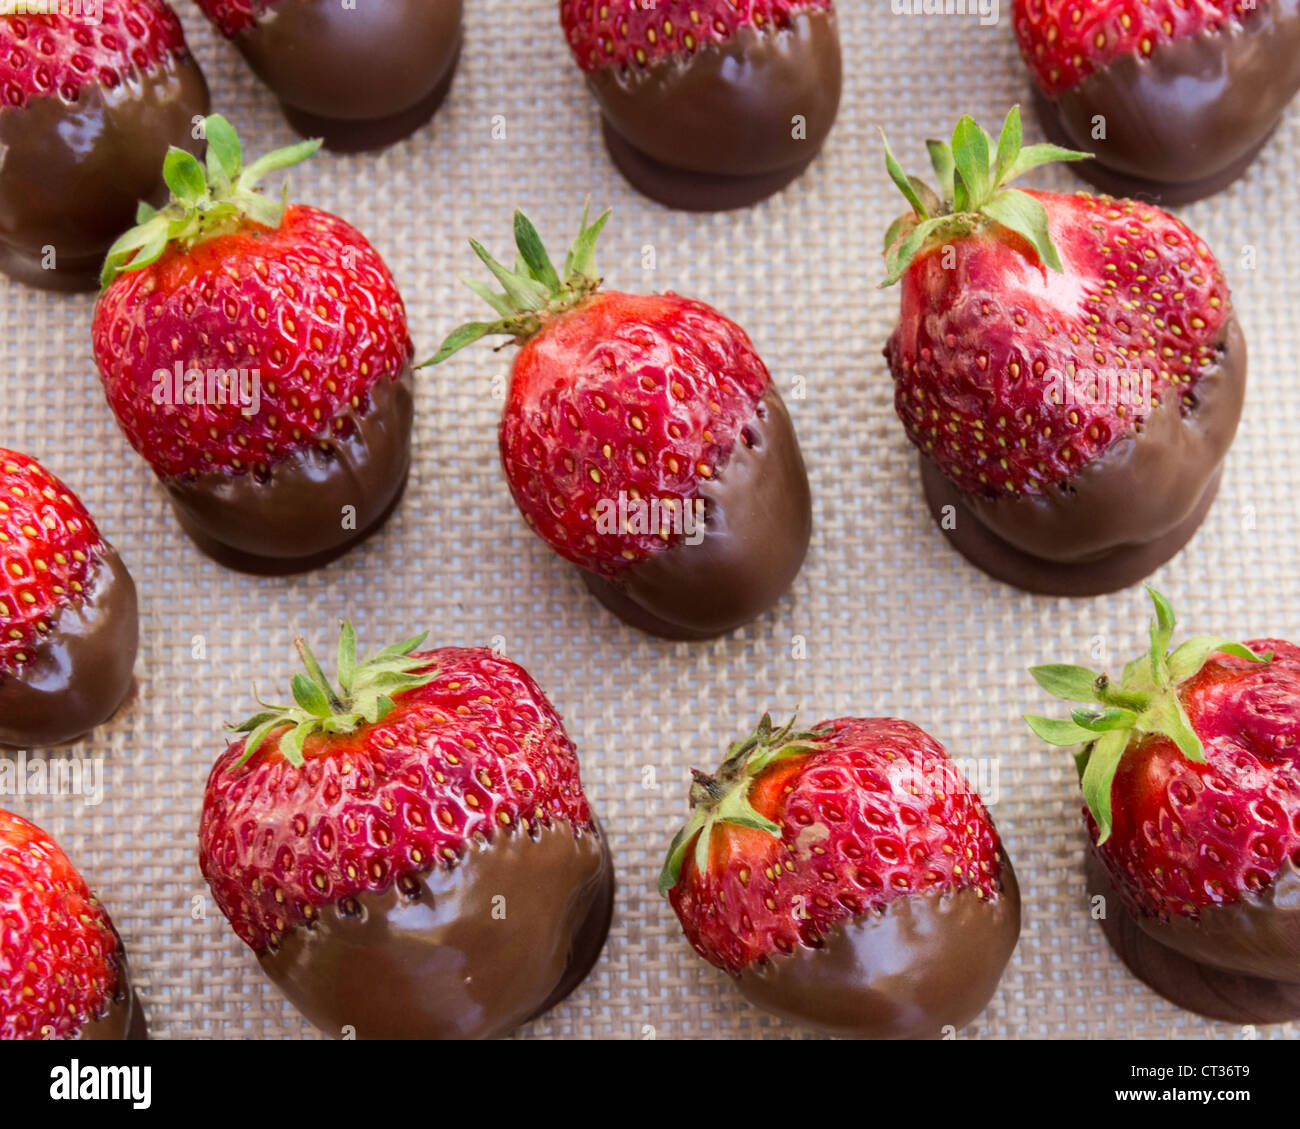 Un plateau de fraises enrobées de chocolat Banque D'Images